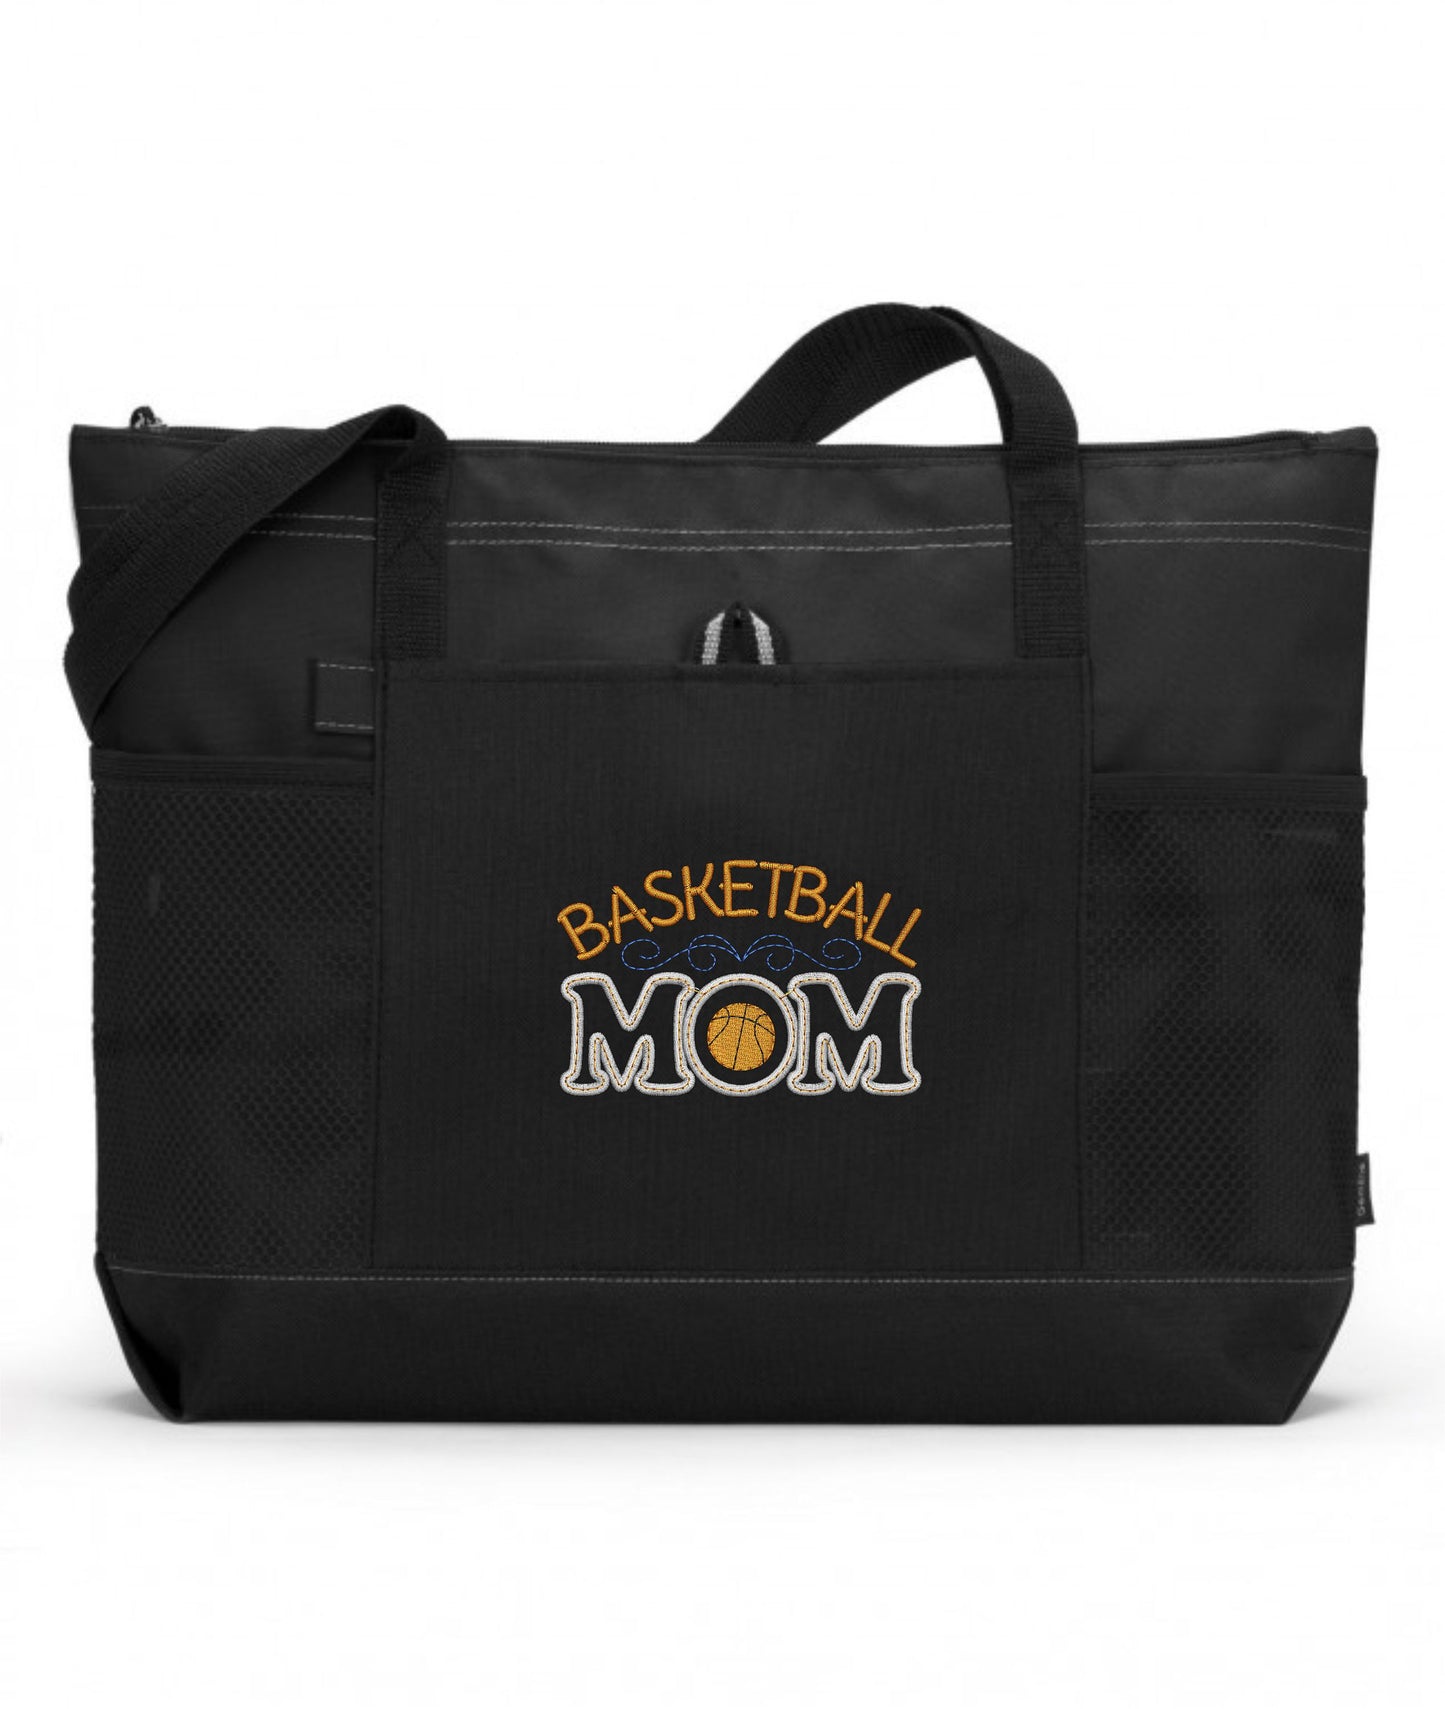 Basketball Mom Embroidered Tote Bag